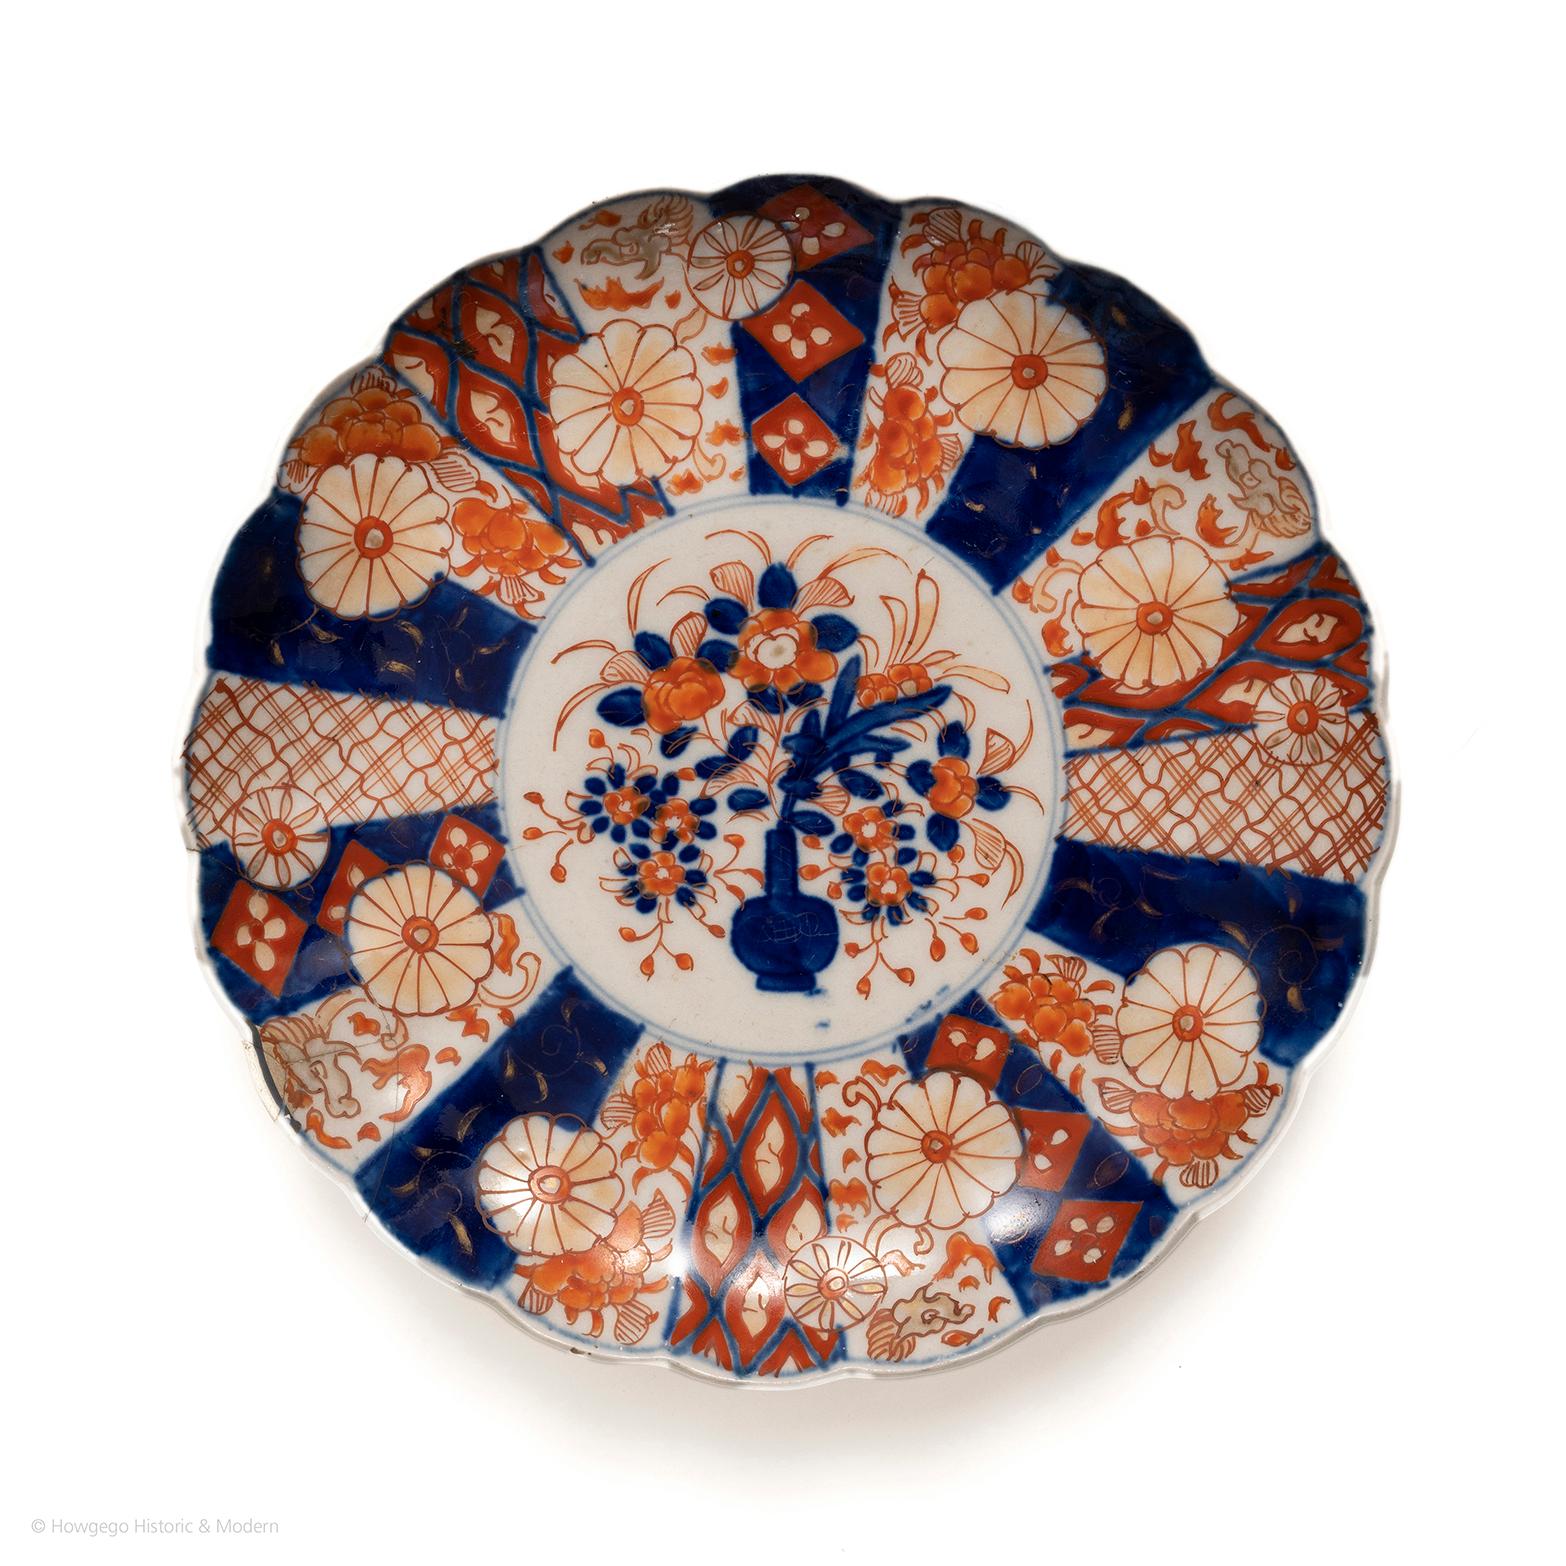 Ein charmanter, gelappter Imari-Teller aus dem 18. Jahrhundert mit Drachenornamenten. Wunderschön bemalt mit einer Vase und einer Fülle von Blumen, umgeben von einem doppelten Kreisrand. Die äußere Bordüre mit kunstvollen Vignetten mit